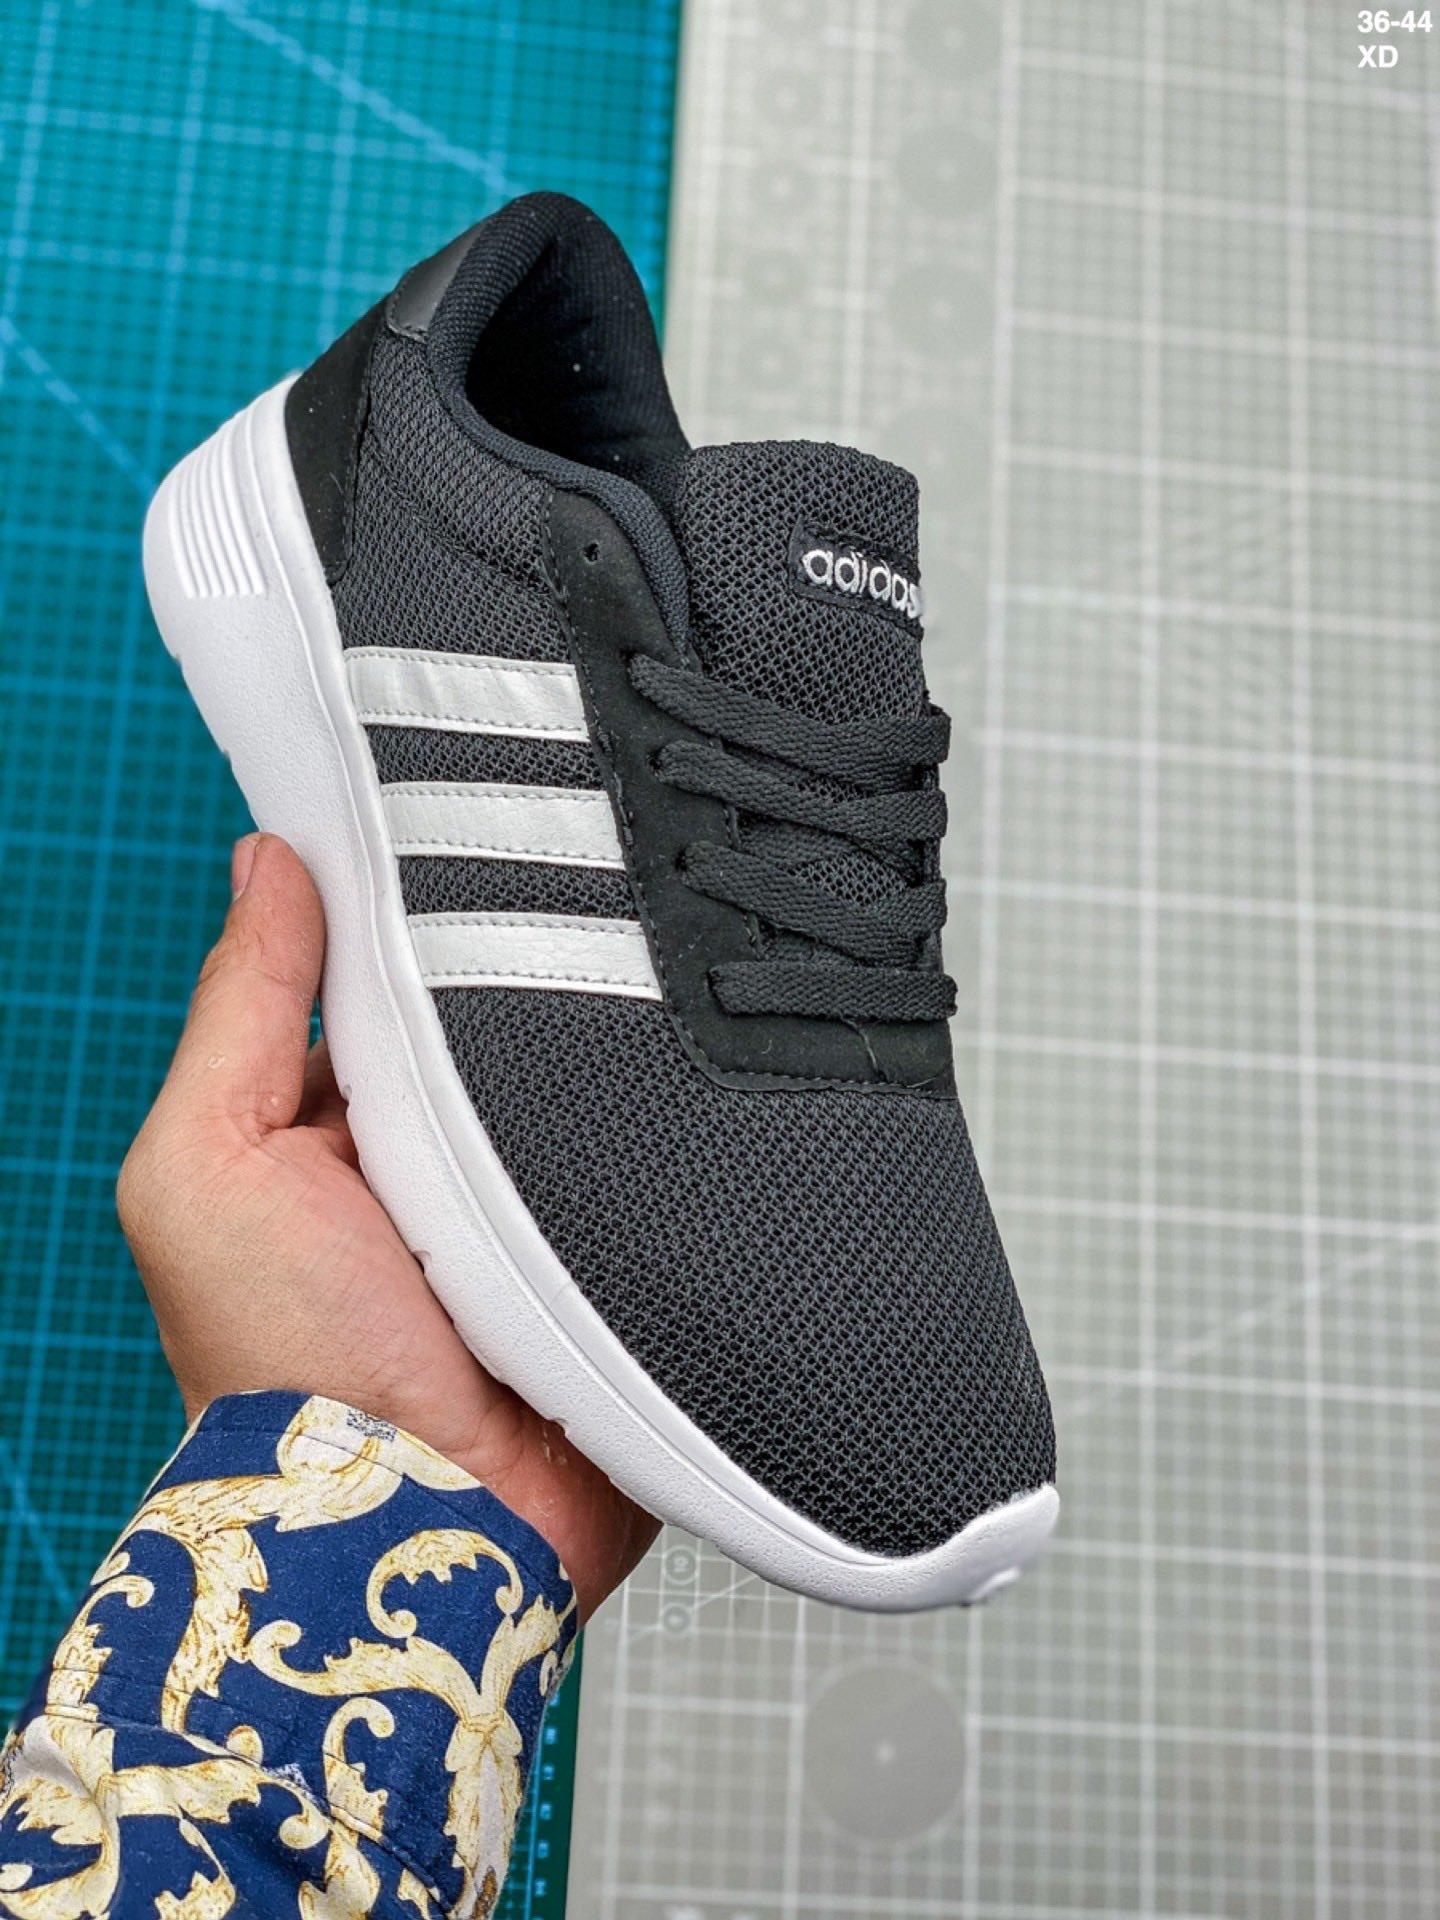 Adidas_ ผู้ชายและผู้หญิงรองเท้าใหม่ฤดูใบไม้ร่วงใหม่ตาข่ายกีฬาเบาสบายระบายอากาศรองเท้าวิ่งที่สะดวกสบาย